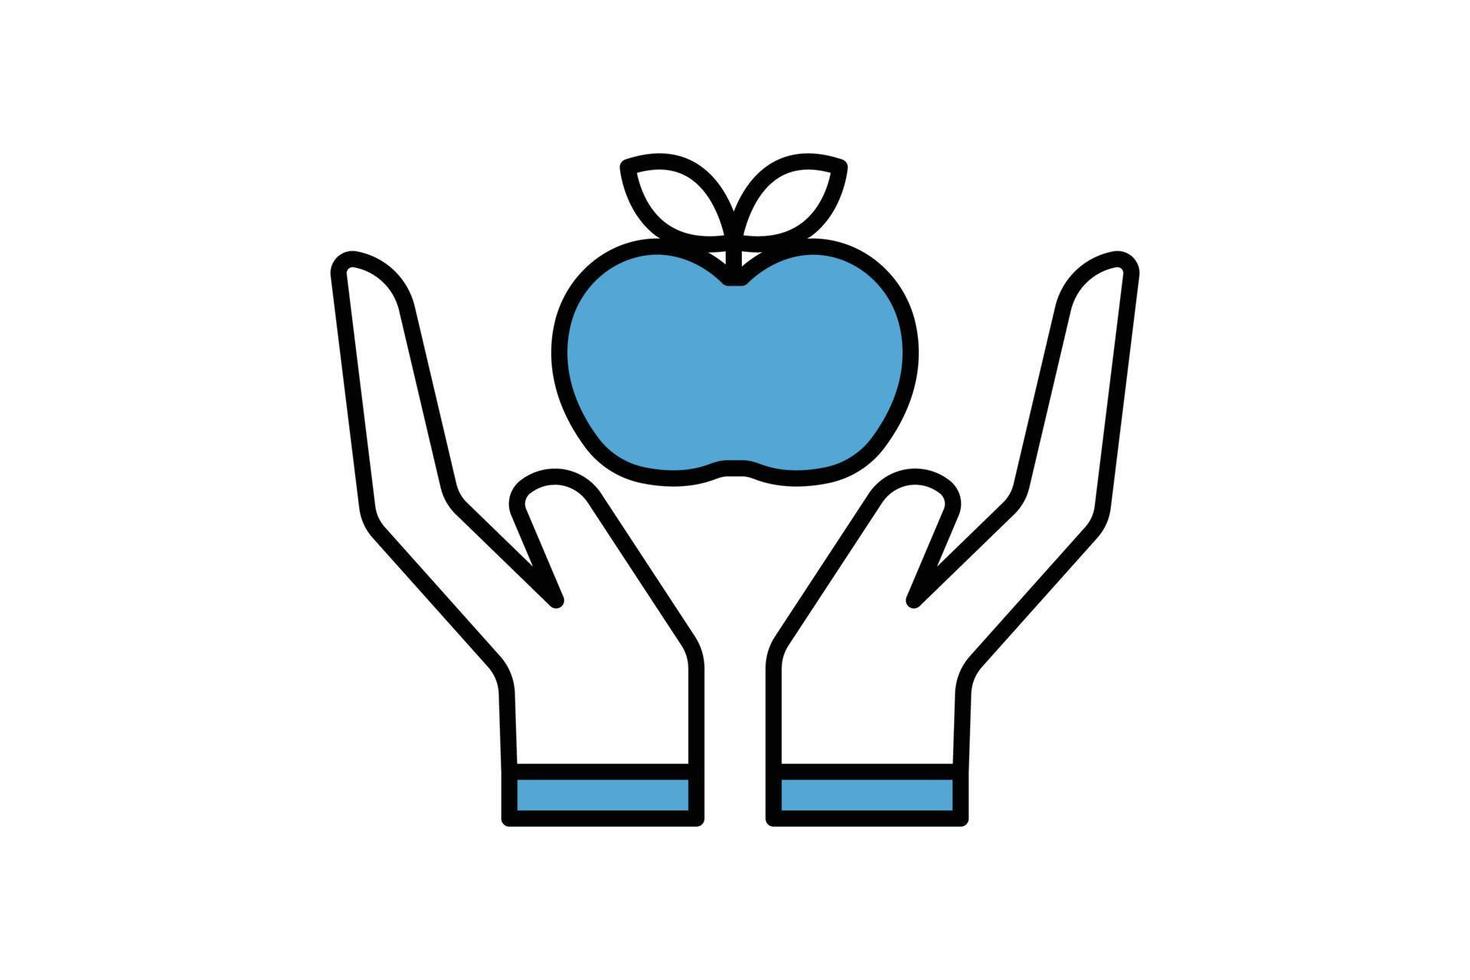 diät-symbol-illustration. Handsymbol mit Apfel. Symbol für einen gesunden Lebensstil. Symbolstil mit flacher Linie. einfaches Vektordesign editierbar vektor